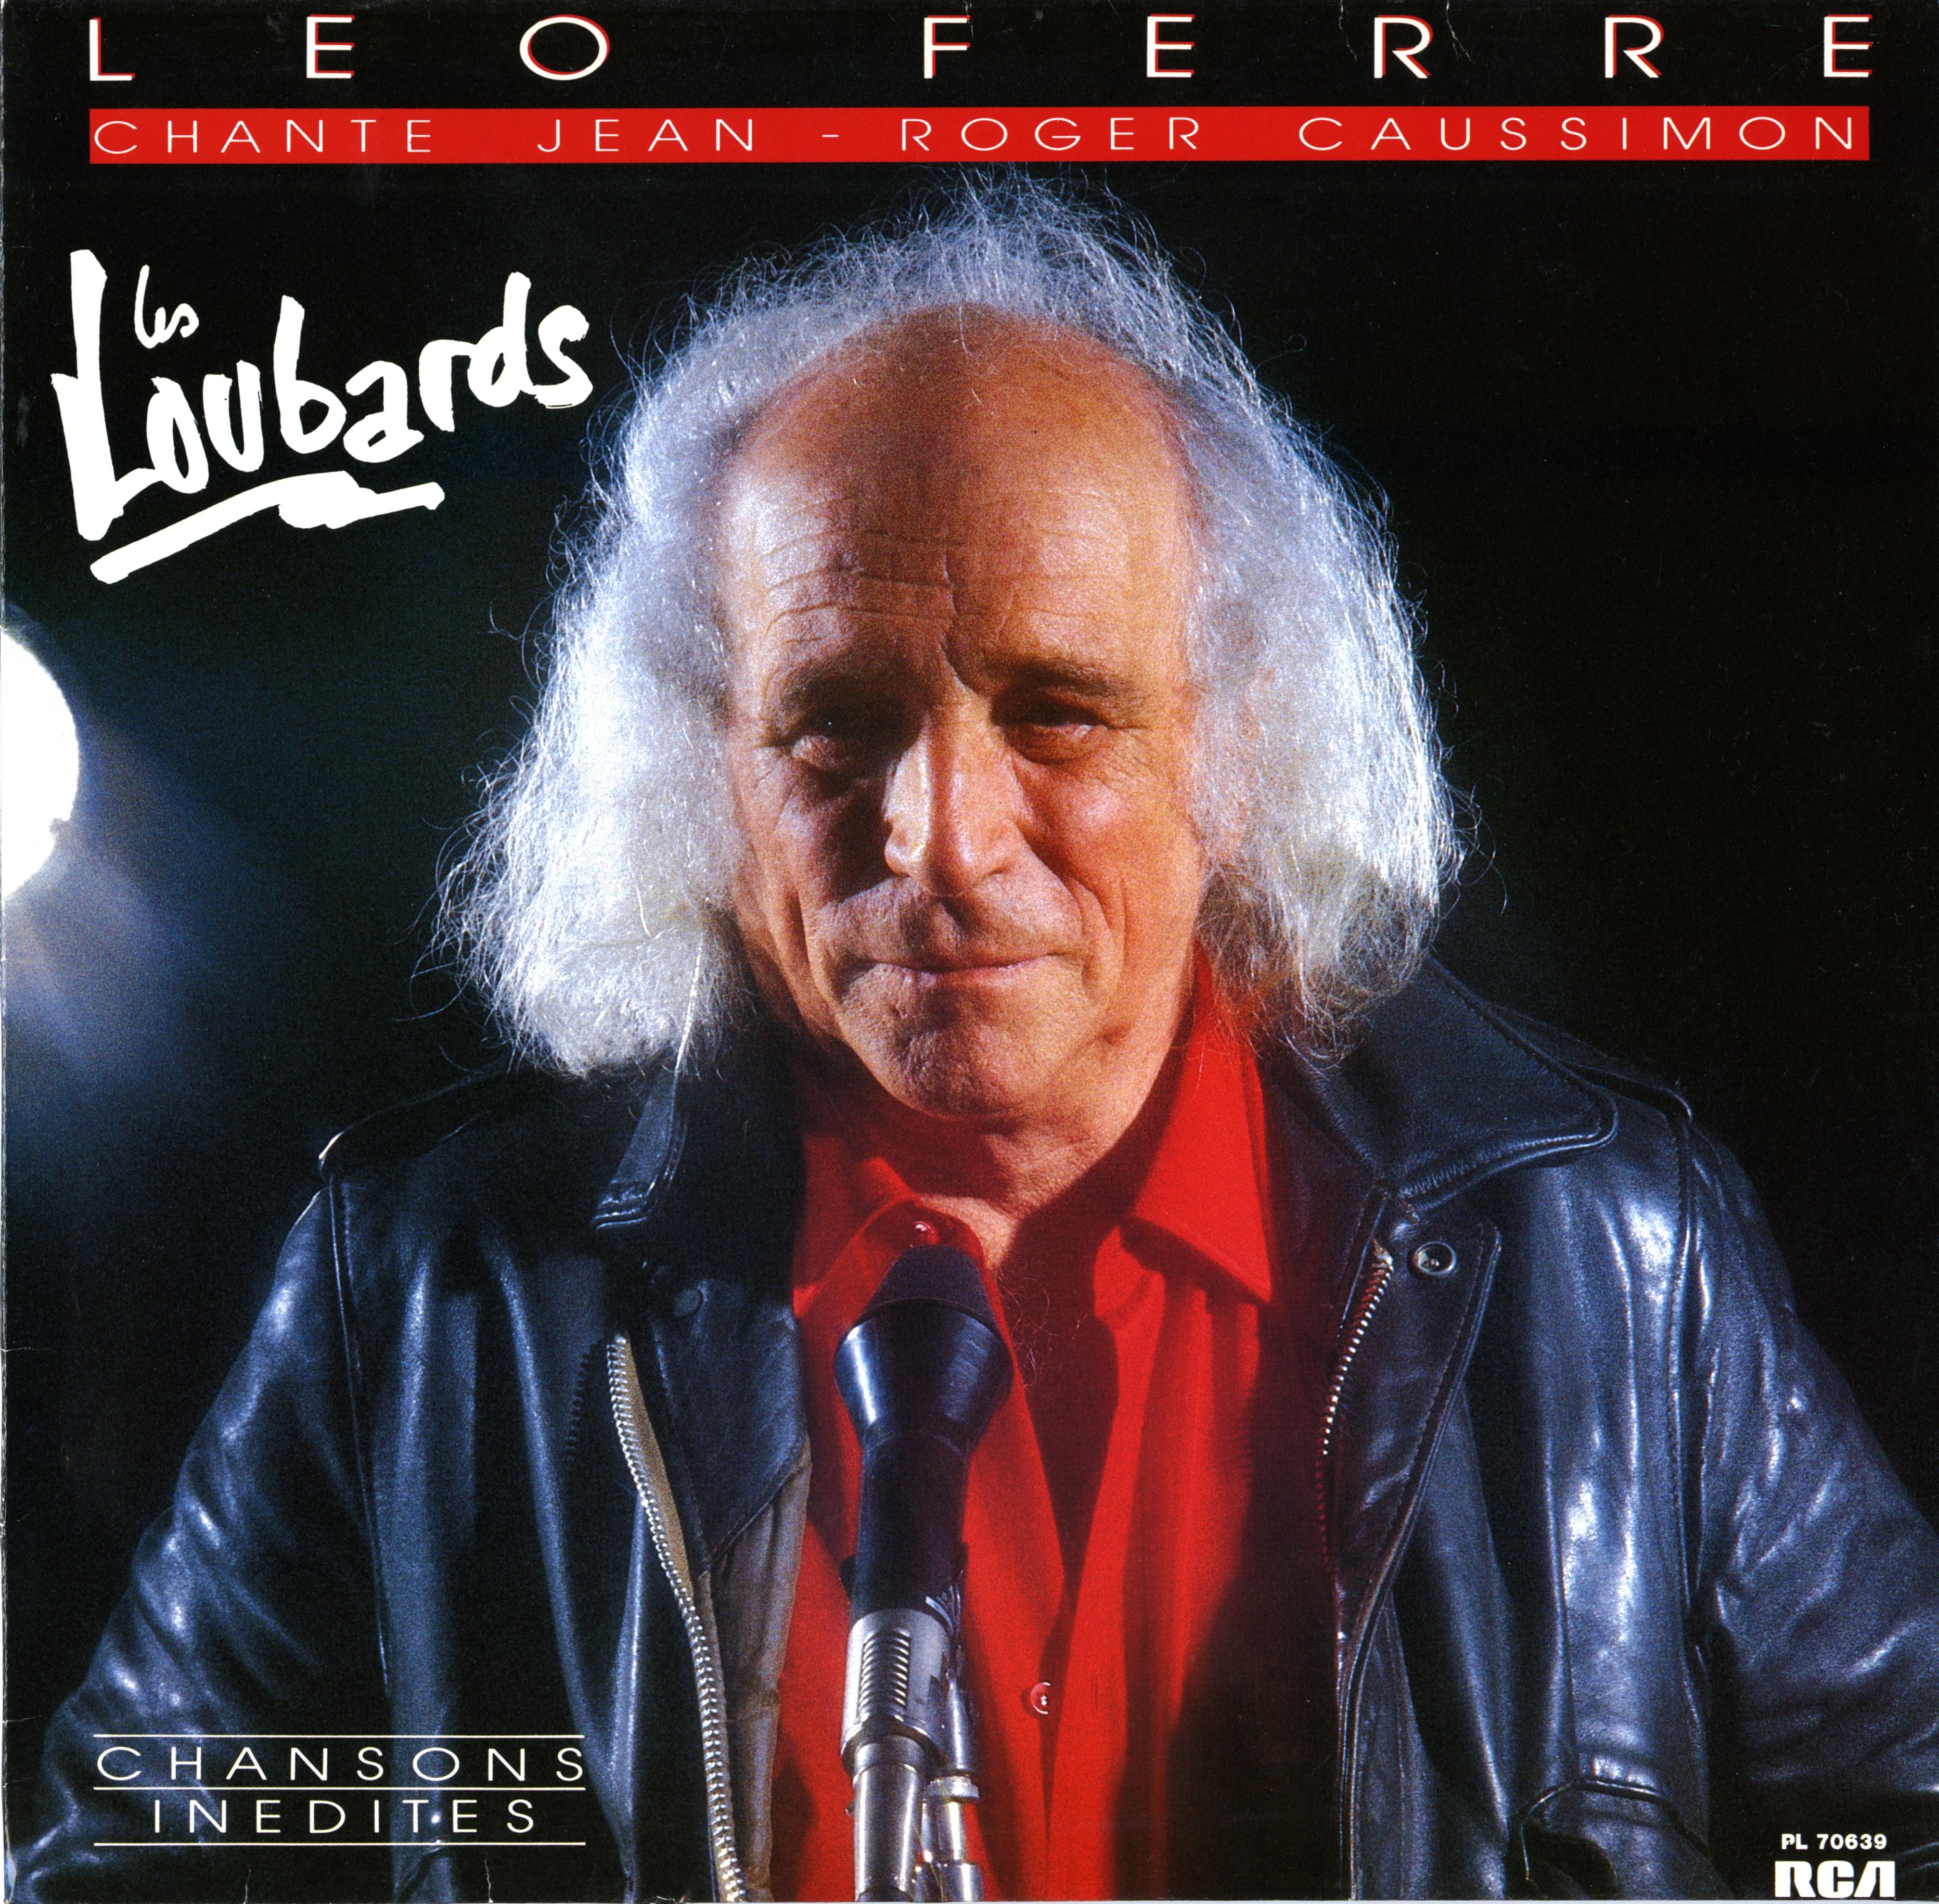 Léo Ferré - Album Les loubards